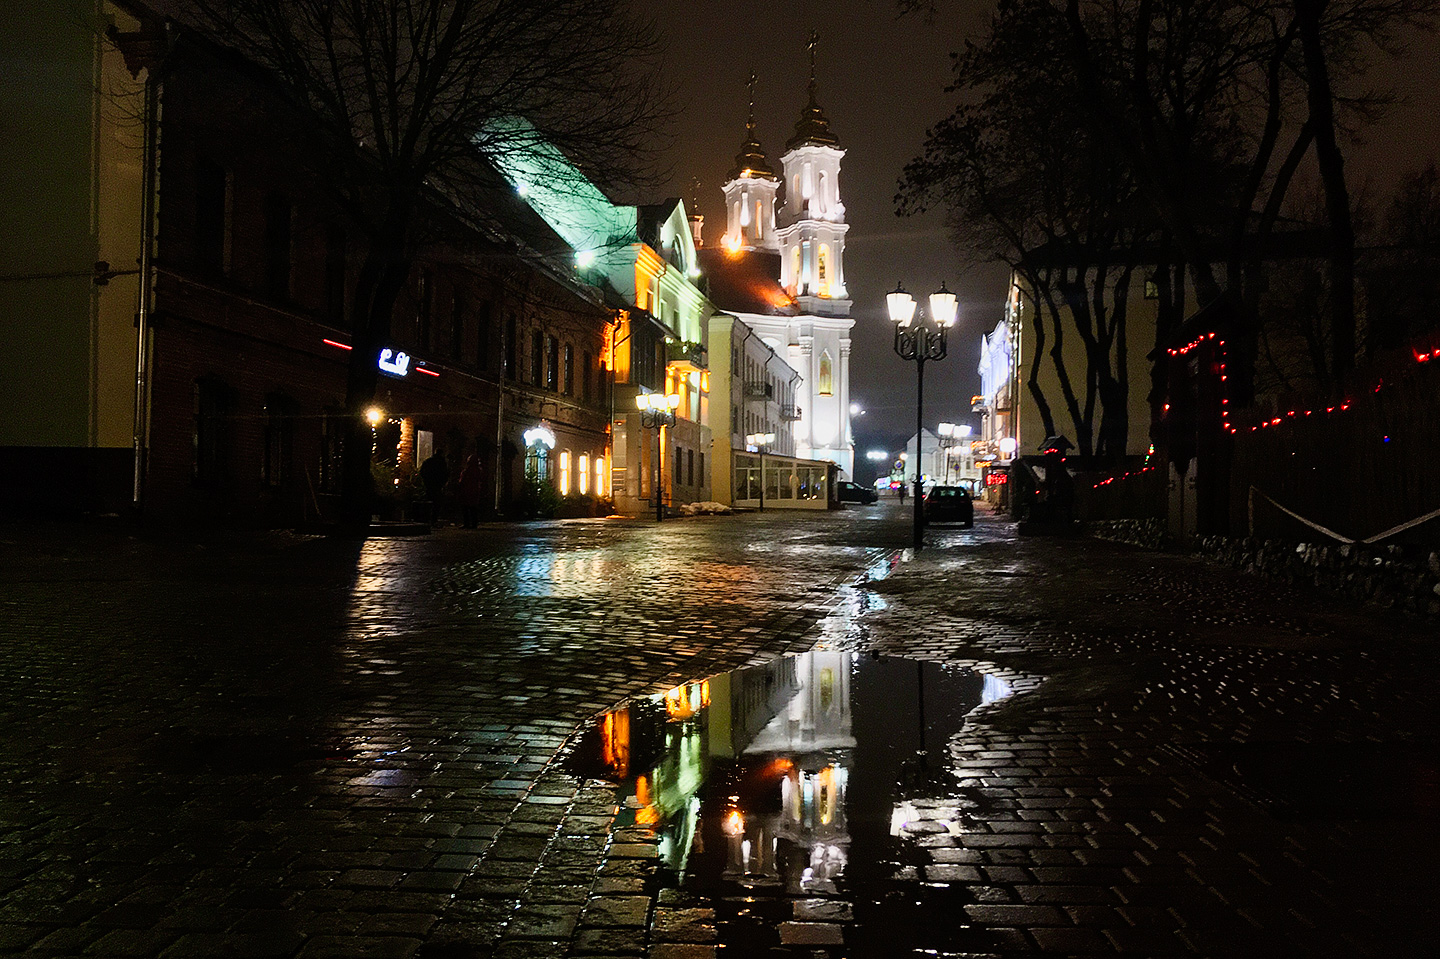 Последние кадры уходящего года: в Витебске традиционный новогодний дождь. Фото Сергея Серебро